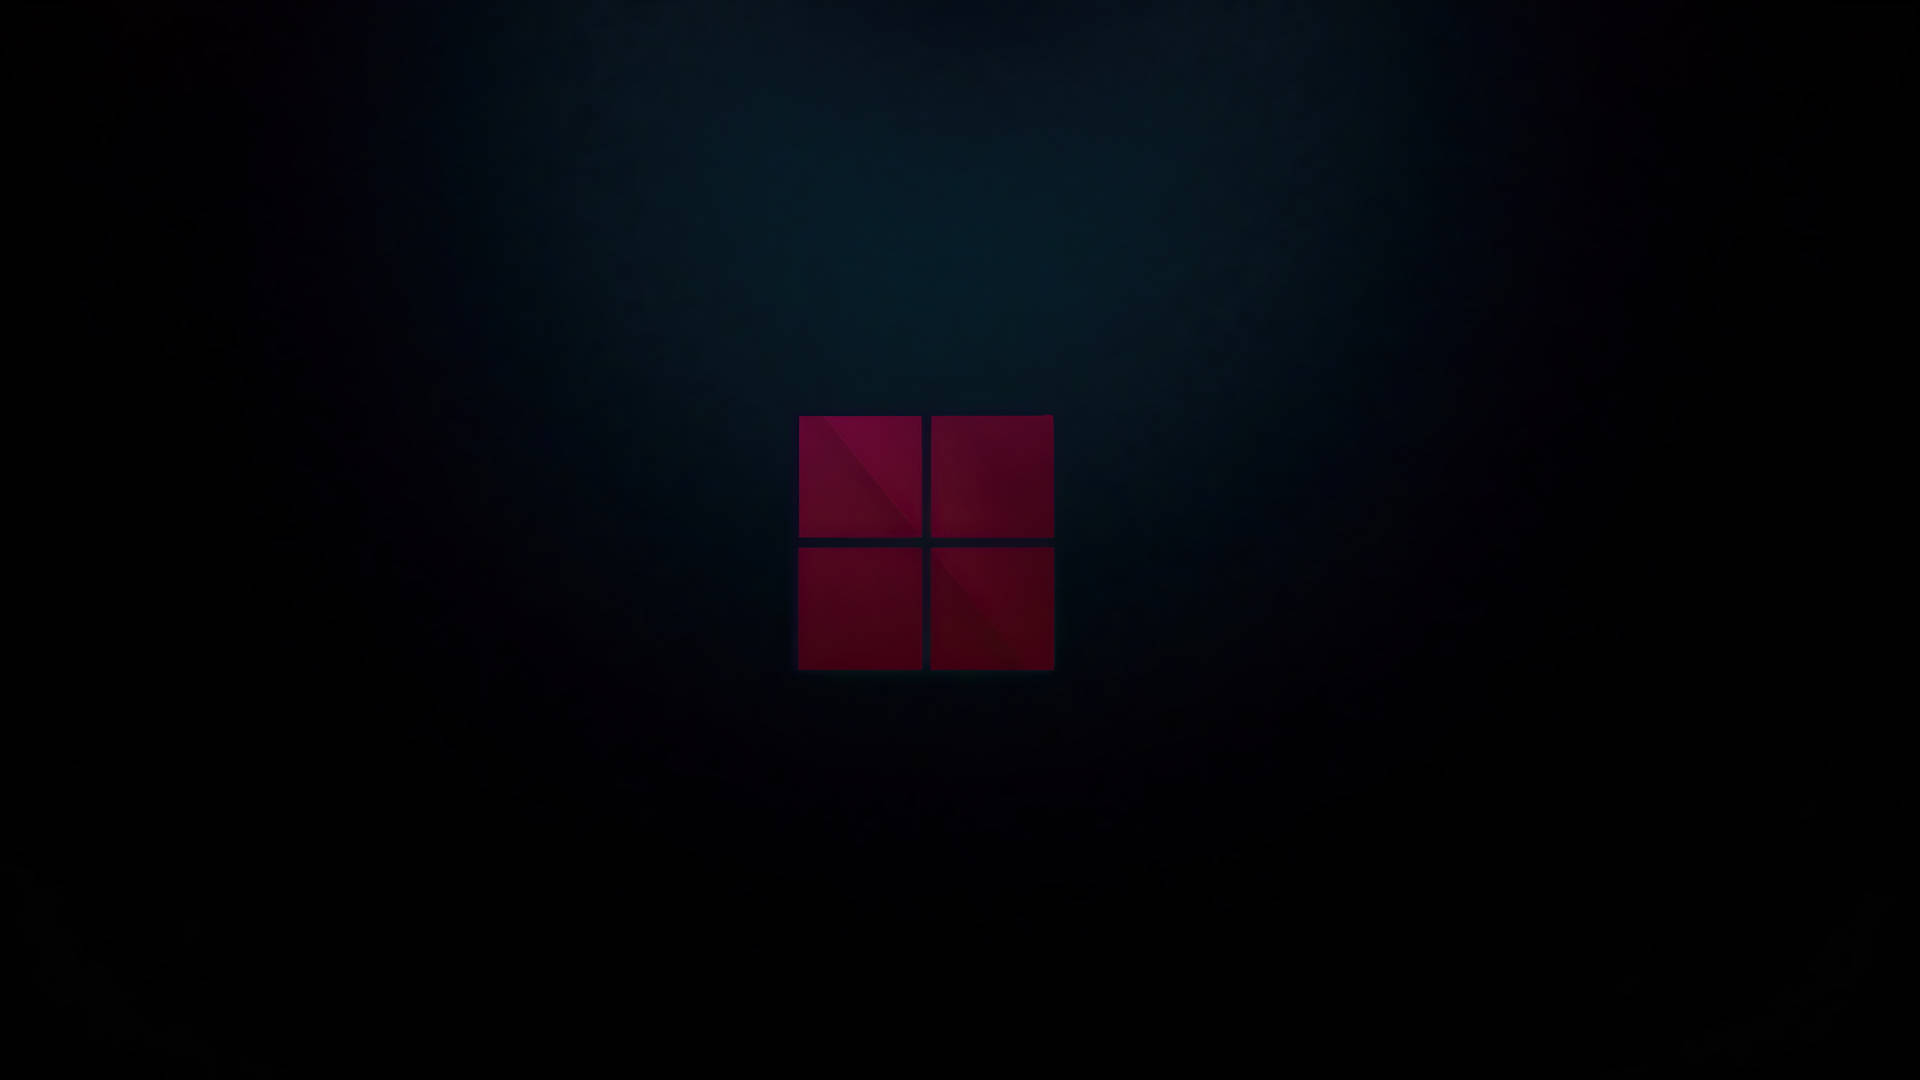 Red Dark Windows Logo Background